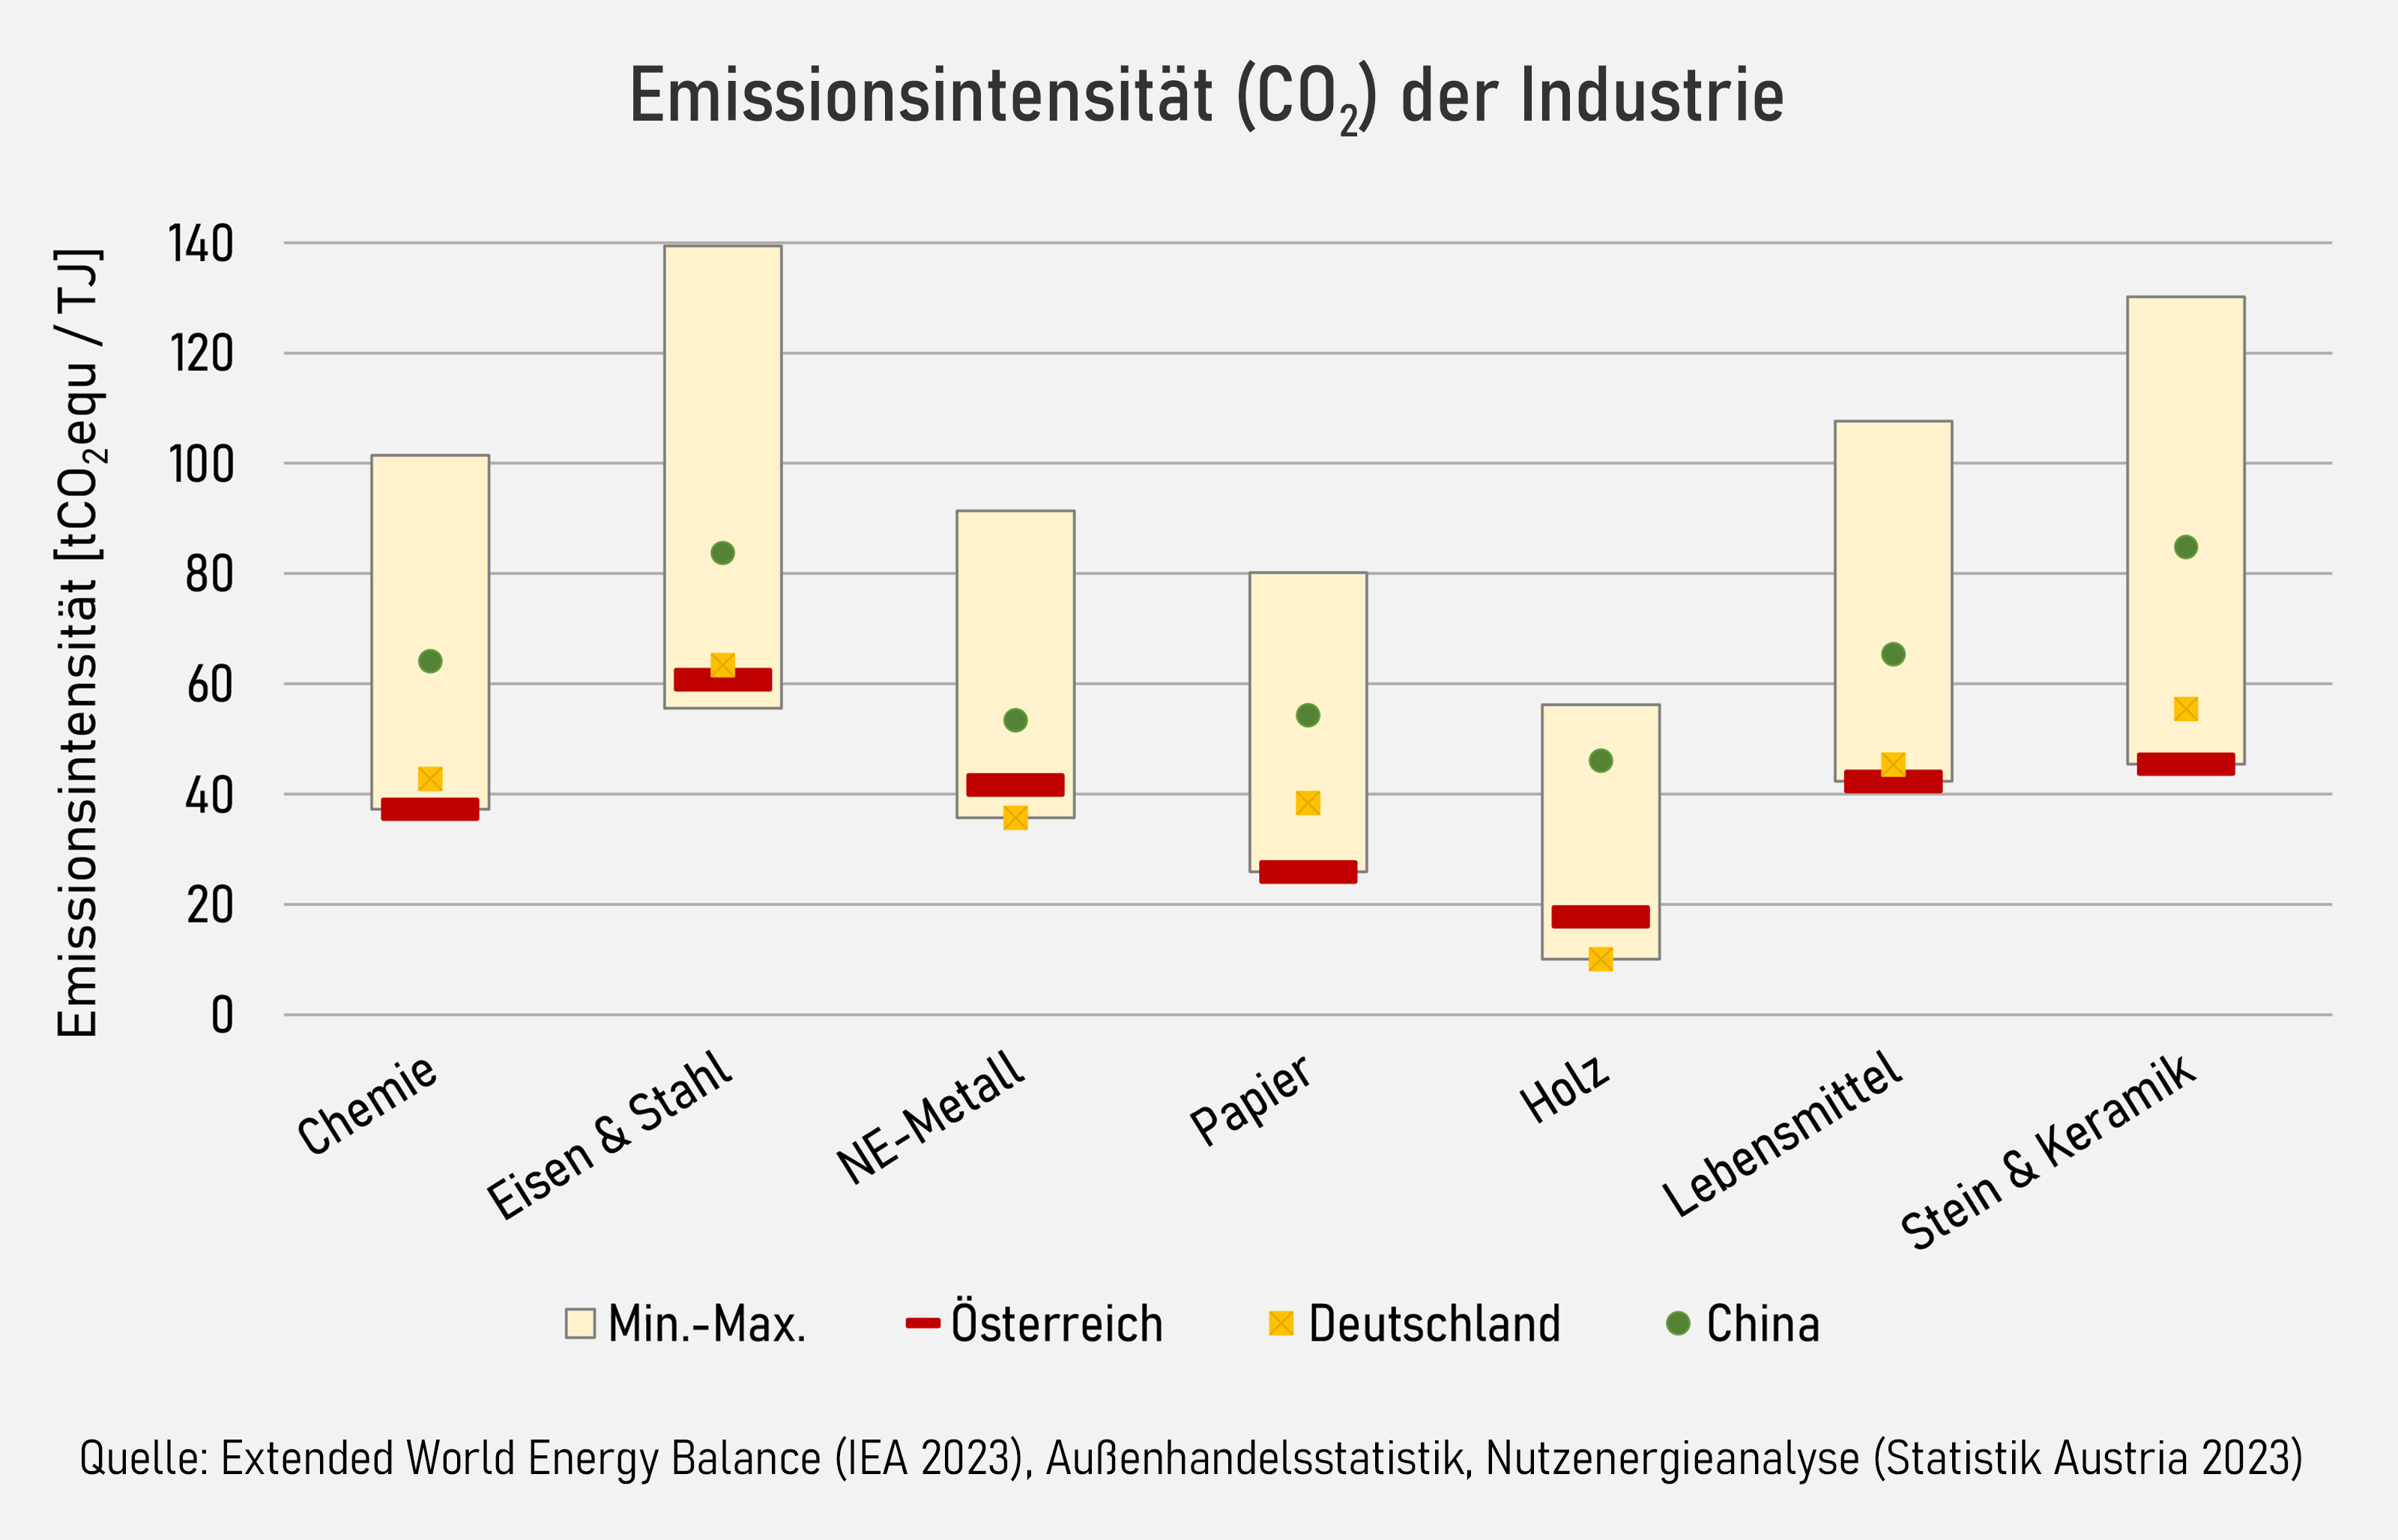 Die Abbildung zeigt die Emissionsintensität in Tonnen CO2eq pro Terajoule nach ausgewählten Industriebranchen für das Jahr 2020.